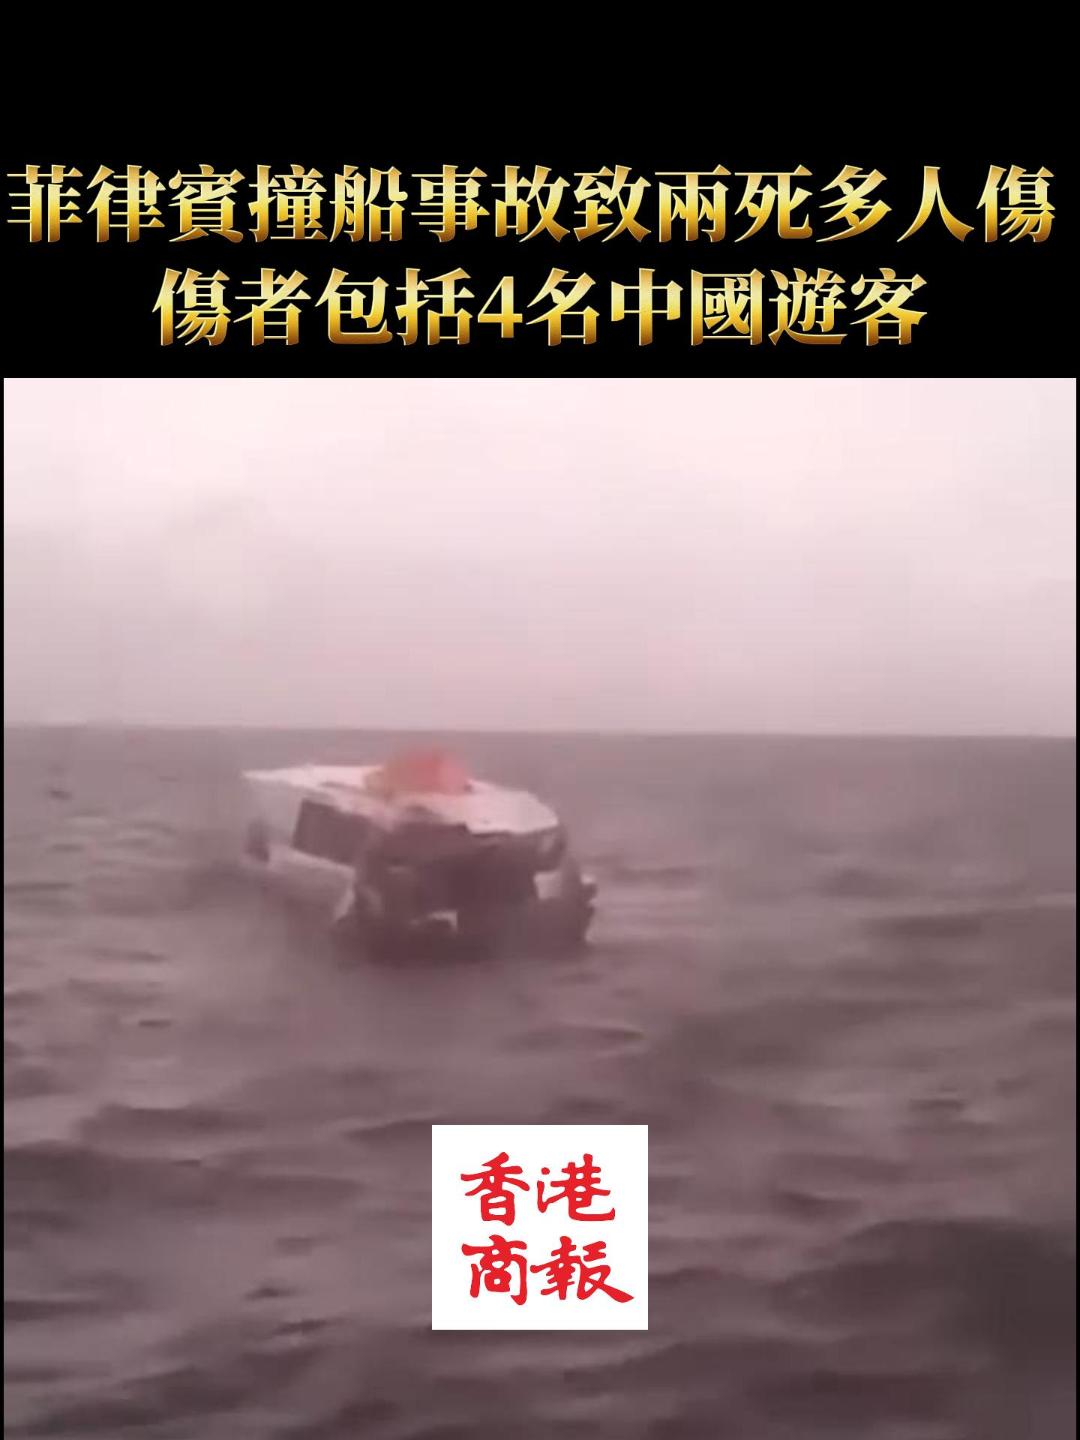 有片丨菲律賓撞船事故致兩死多人傷 傷者包括4名中國遊客